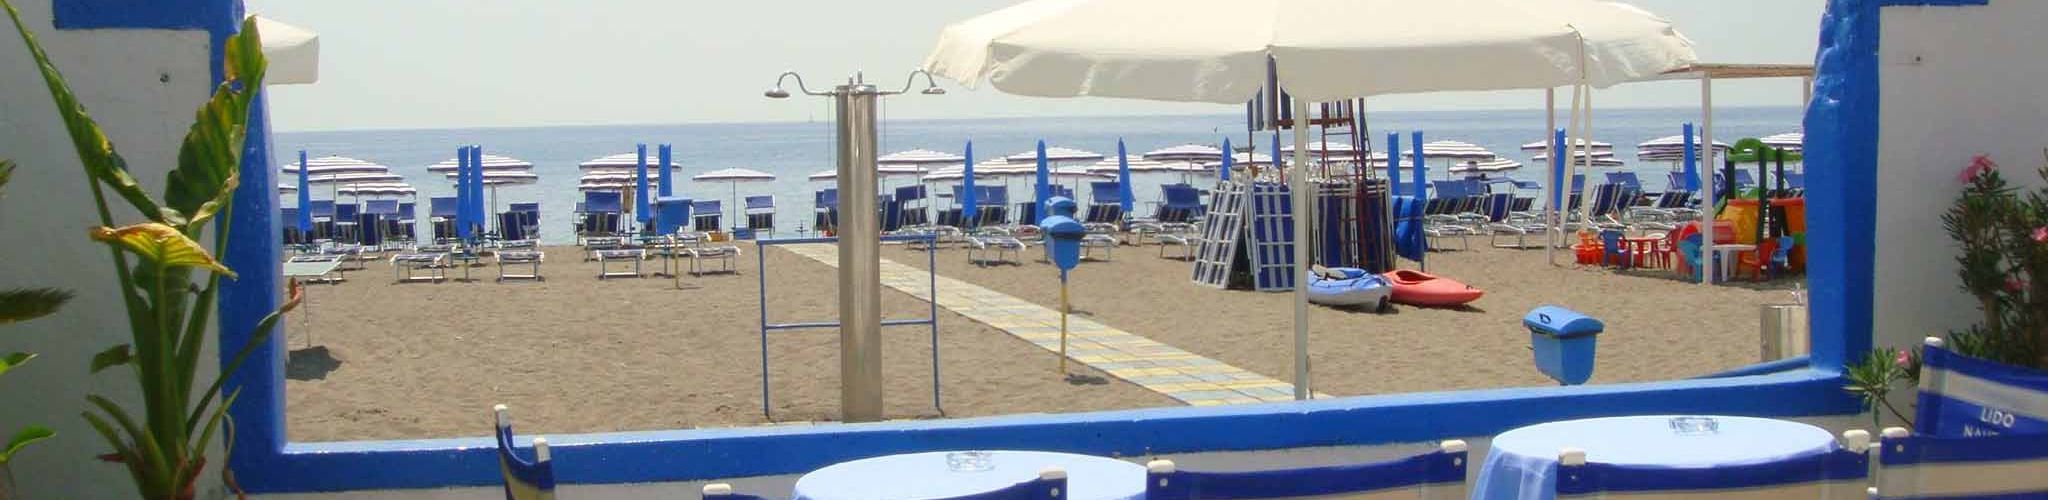 Hotel con Spiaggia privata Praia a Mare